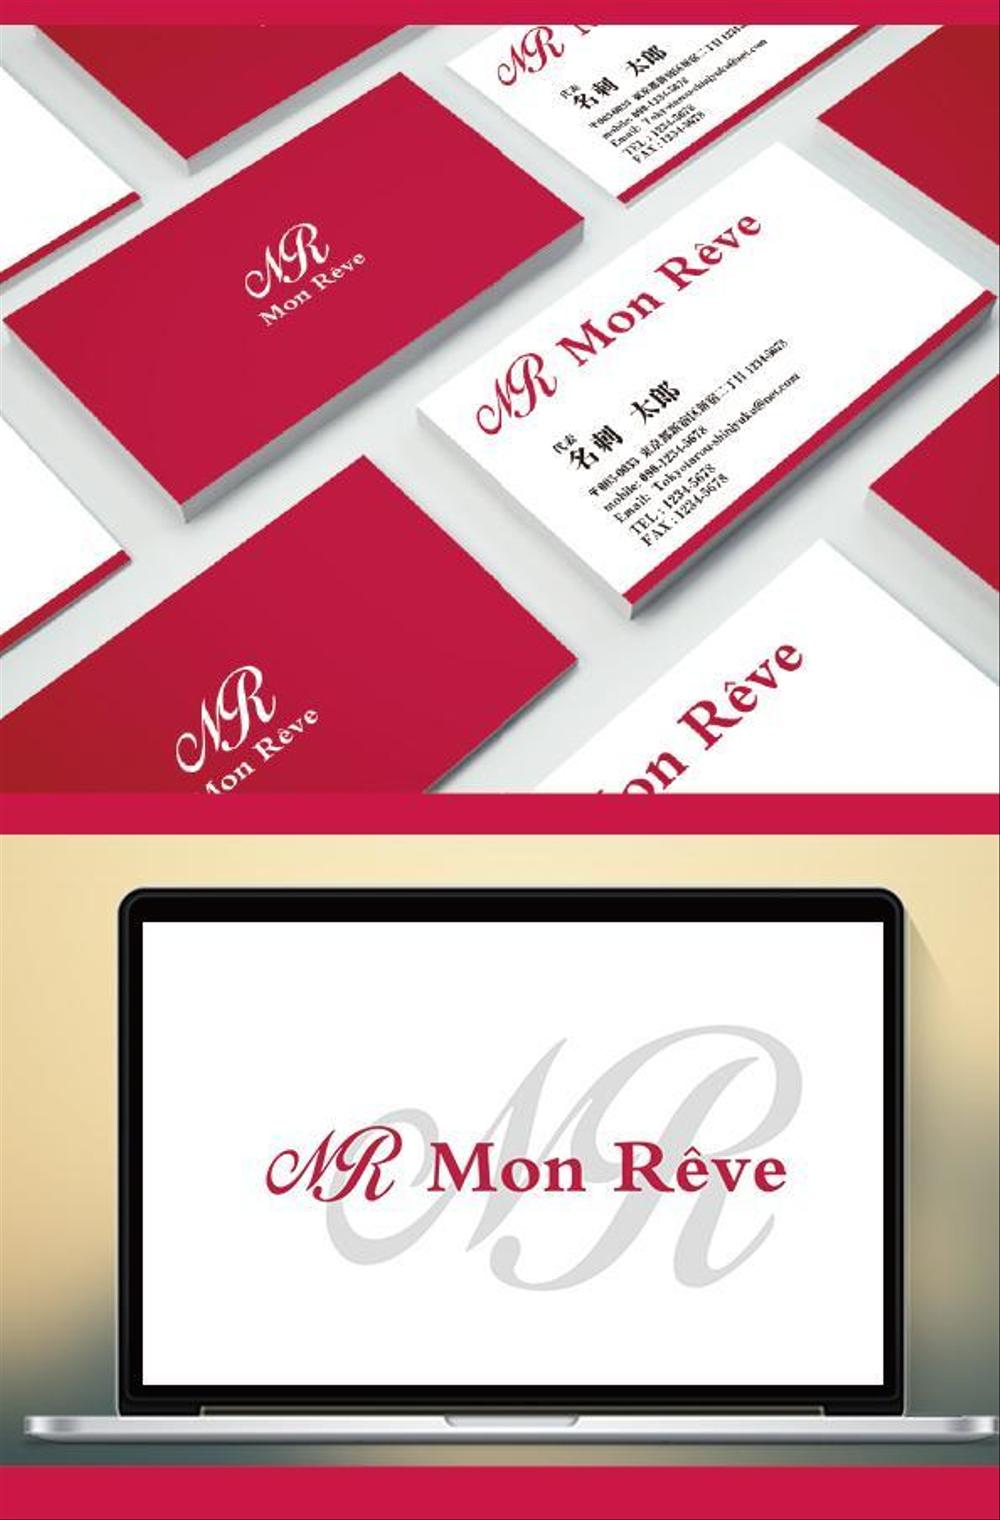 ネイルレンタルスペース「Mon Rêve」のロゴ (商標登録予定なし)